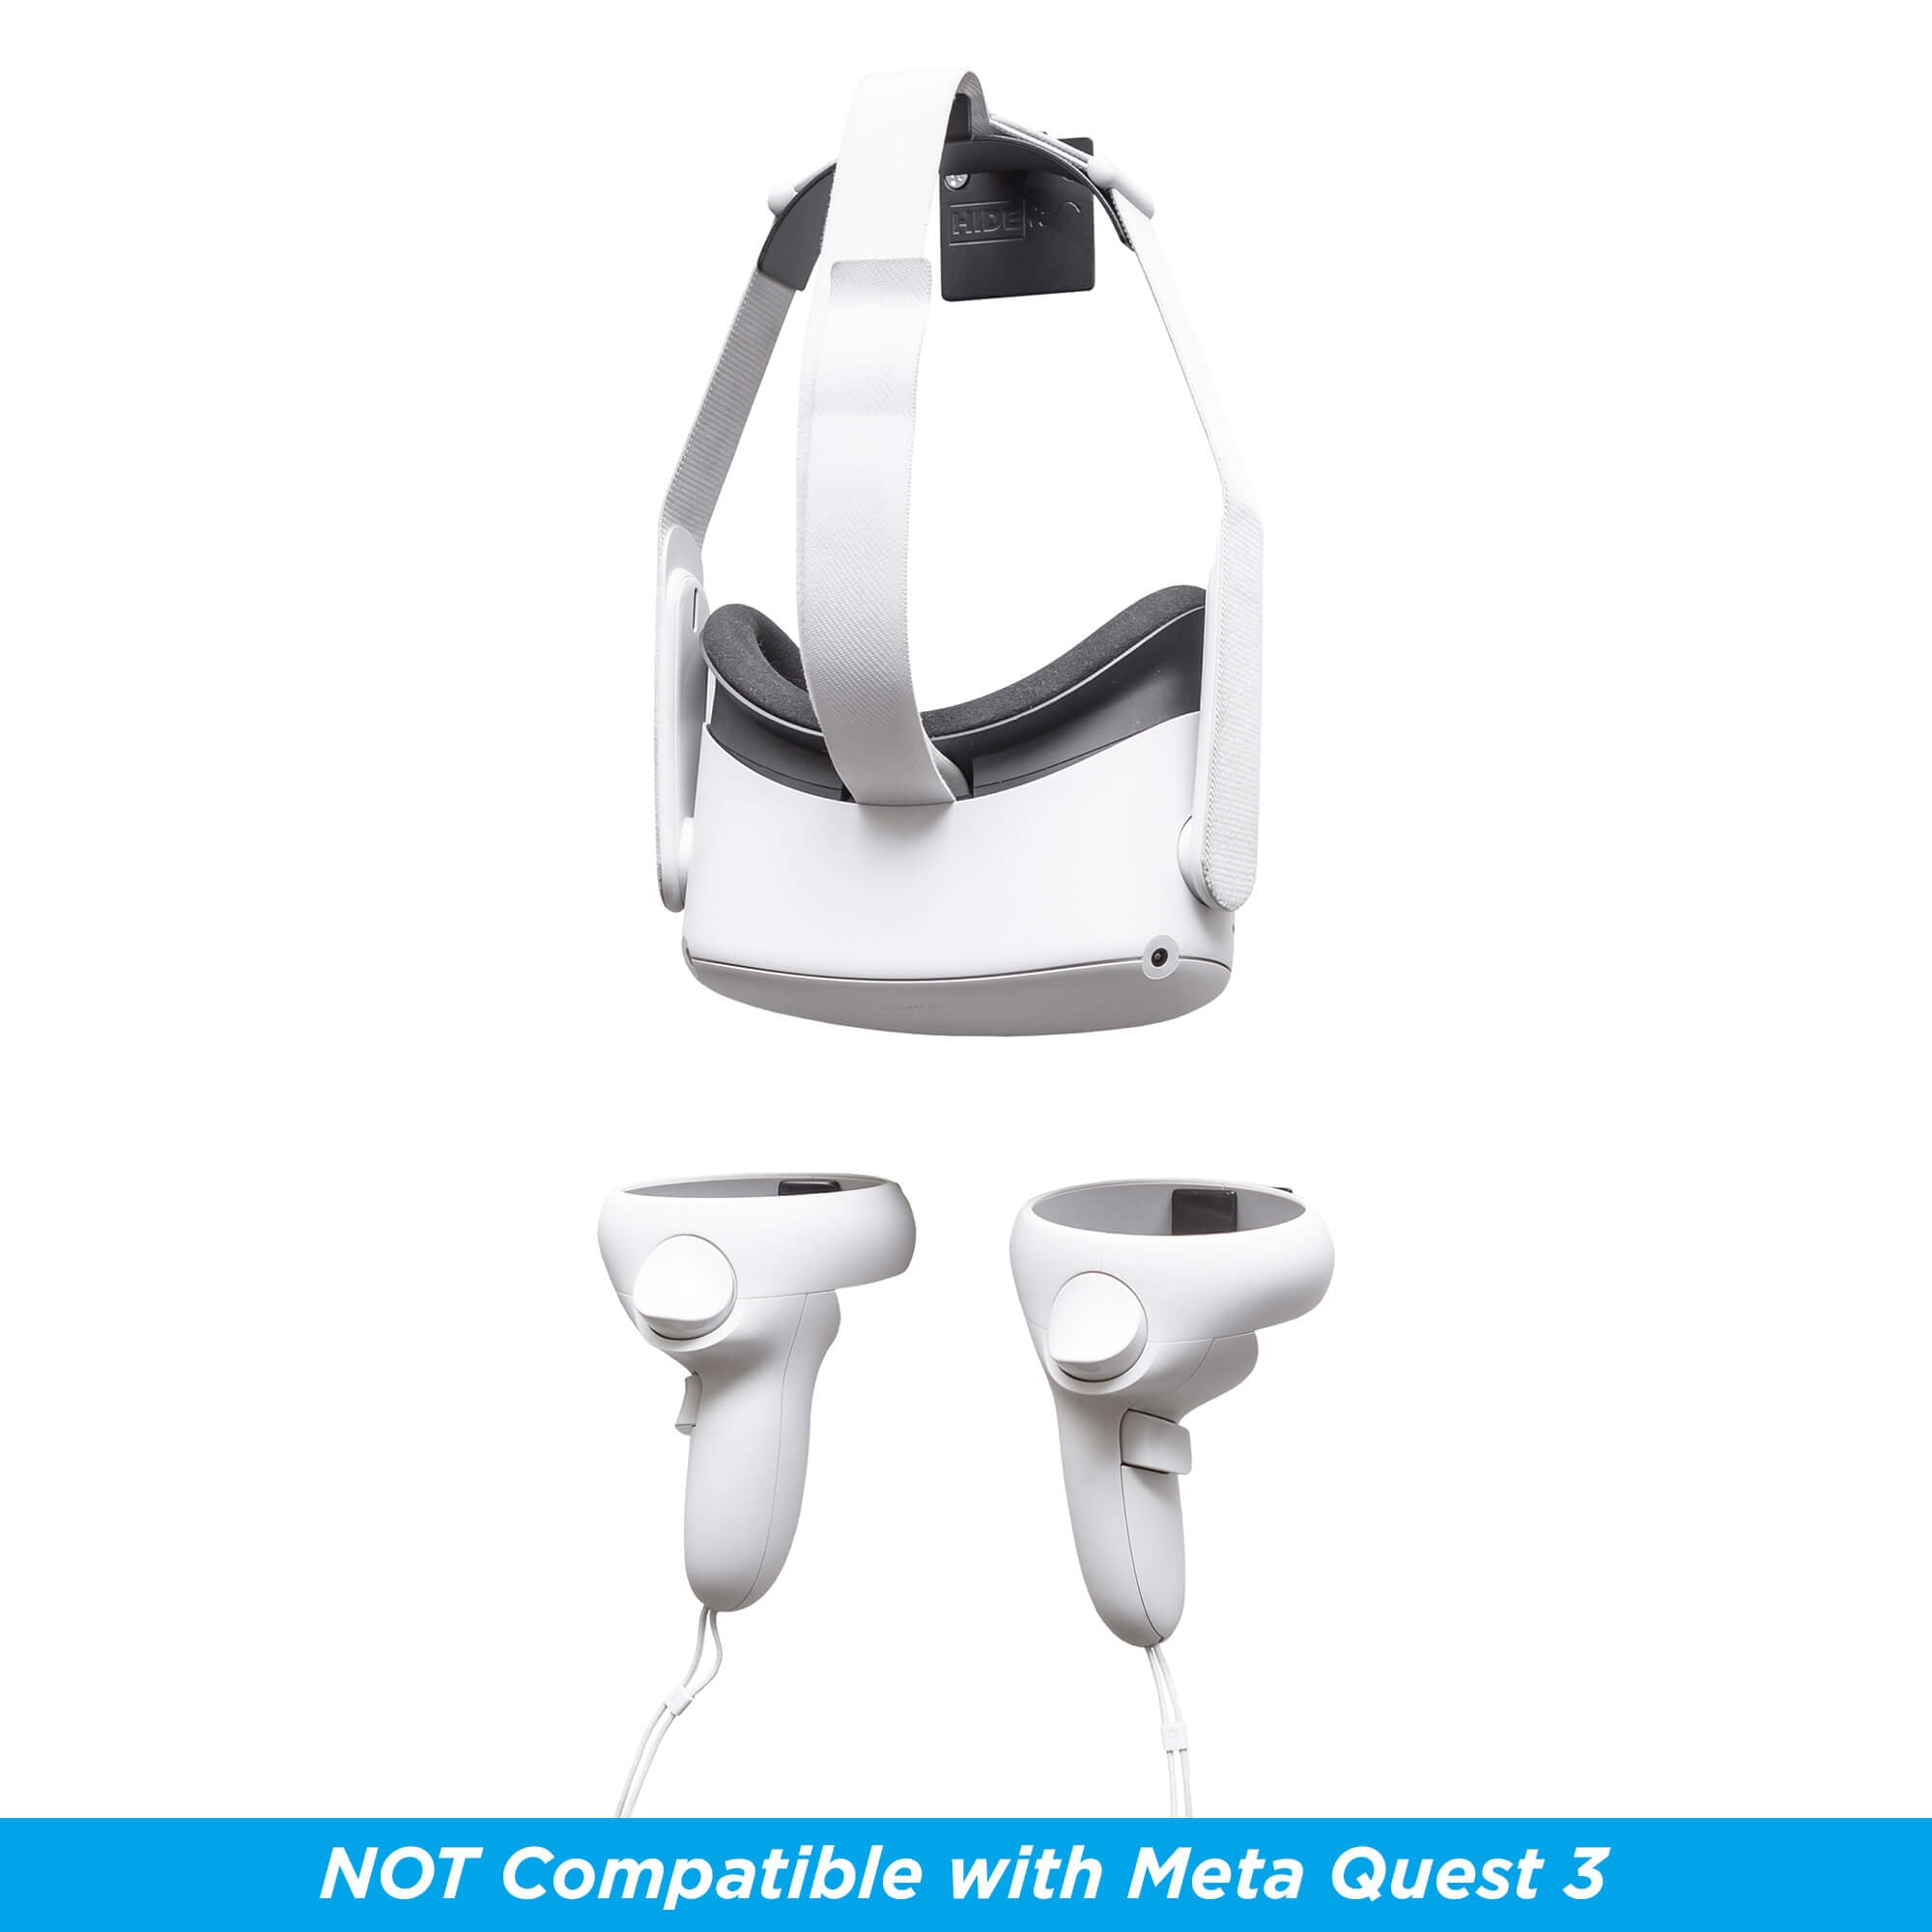 Meta Quest 3 VR Headset | GameStop